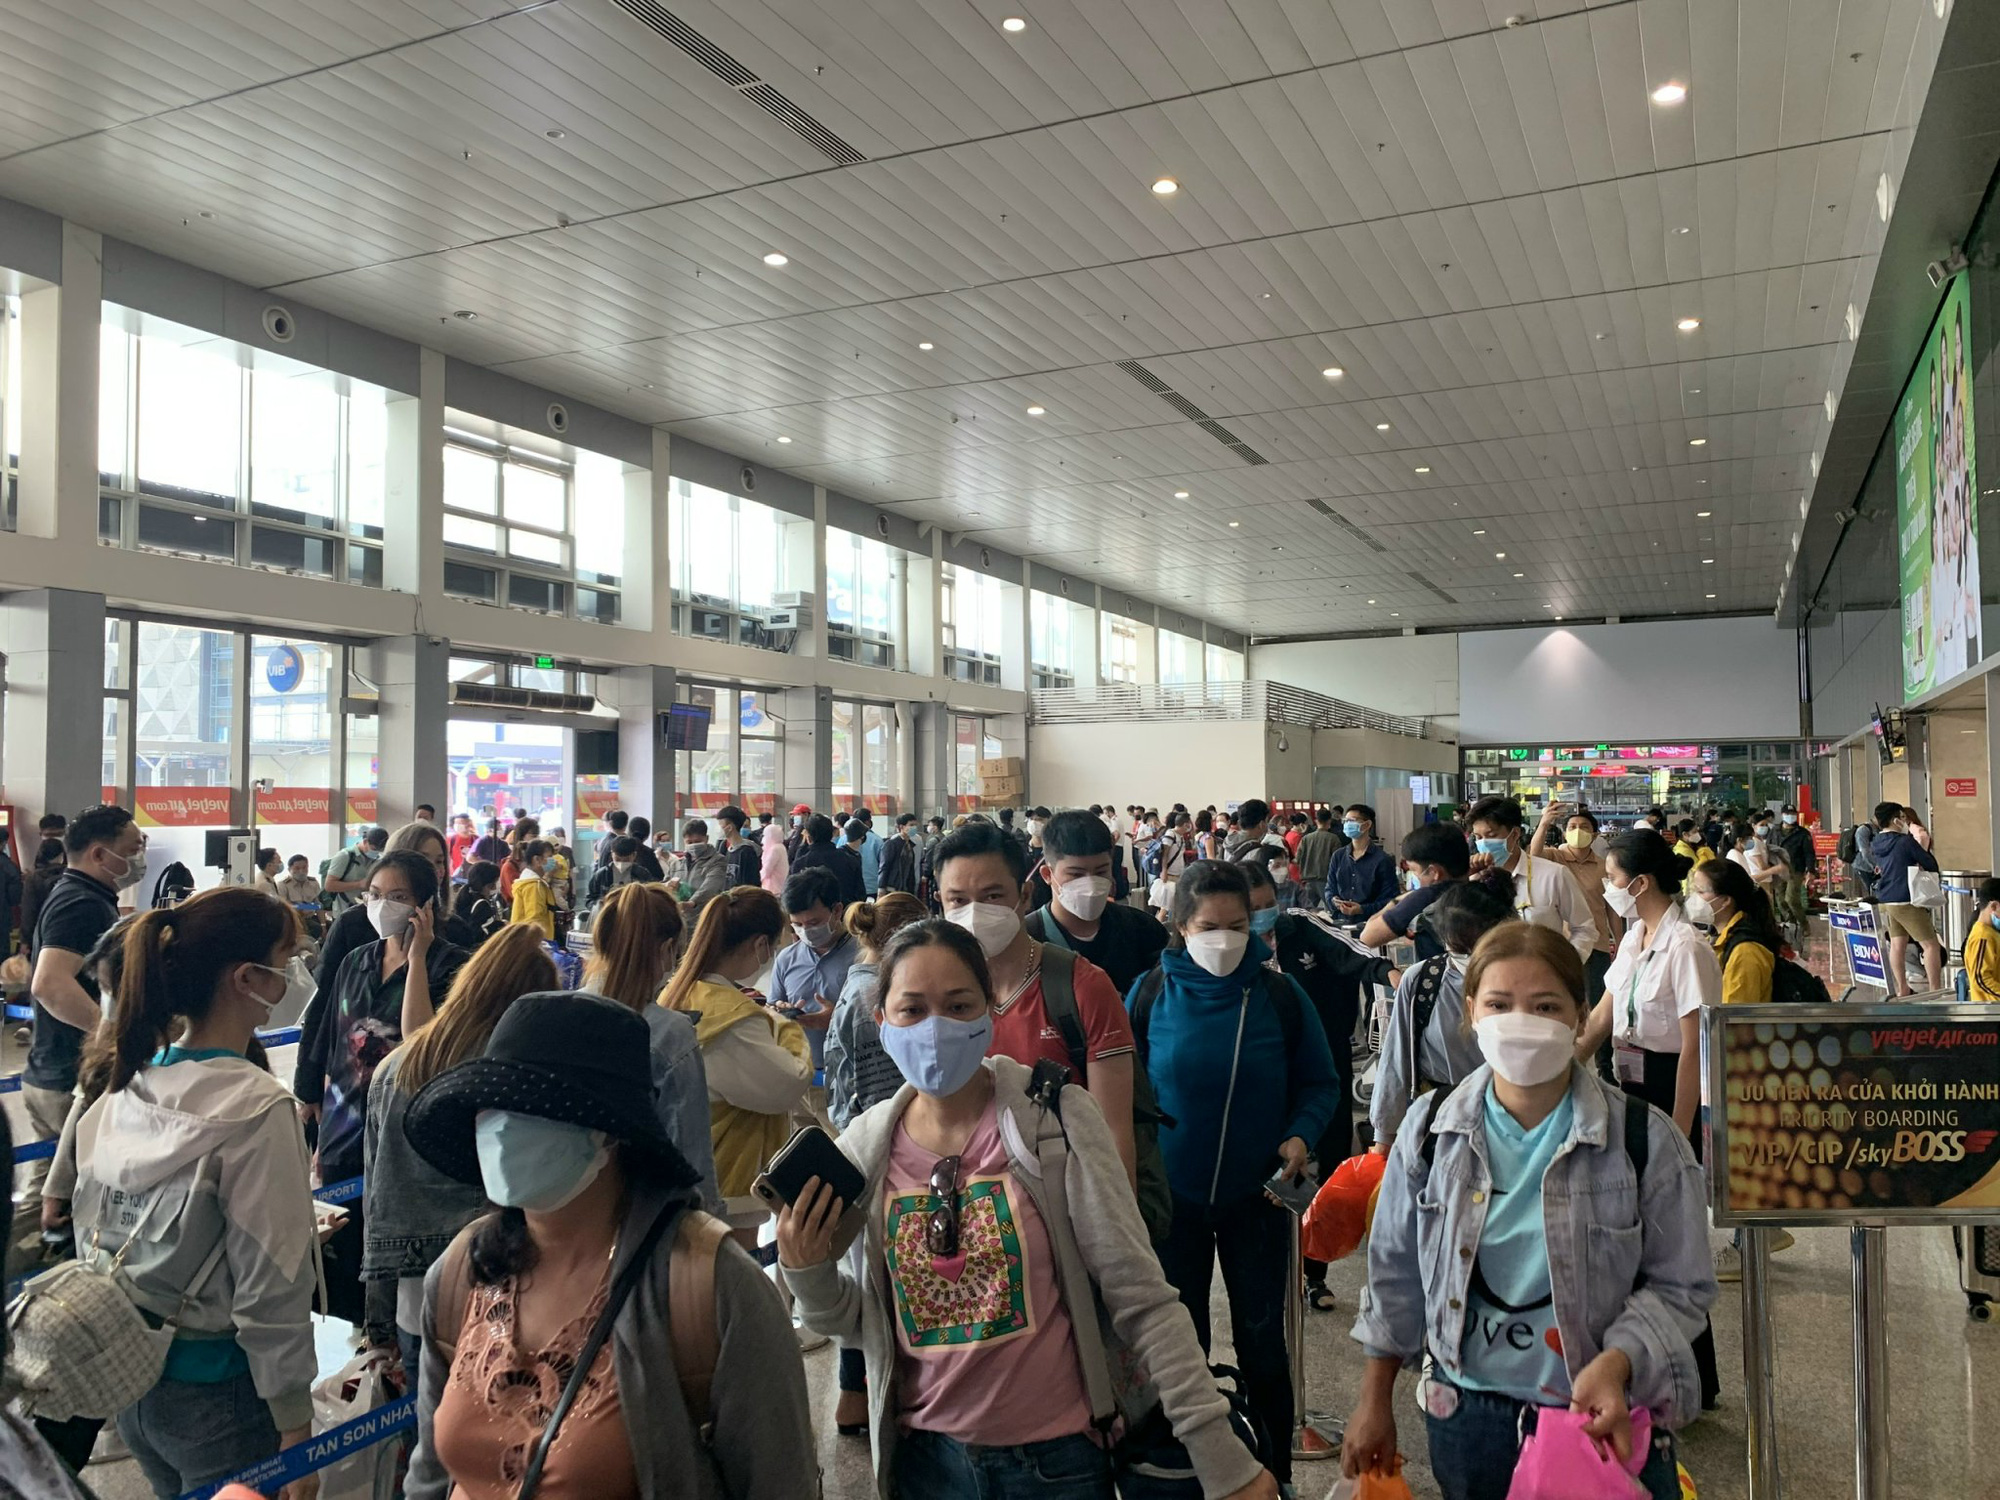 Tân Sơn Nhất dự báo đón lượng khách "khủng" dịp Tết, các hãng phải hạn chế tối đa việc chậm, hủy chuyến- Ảnh 3.